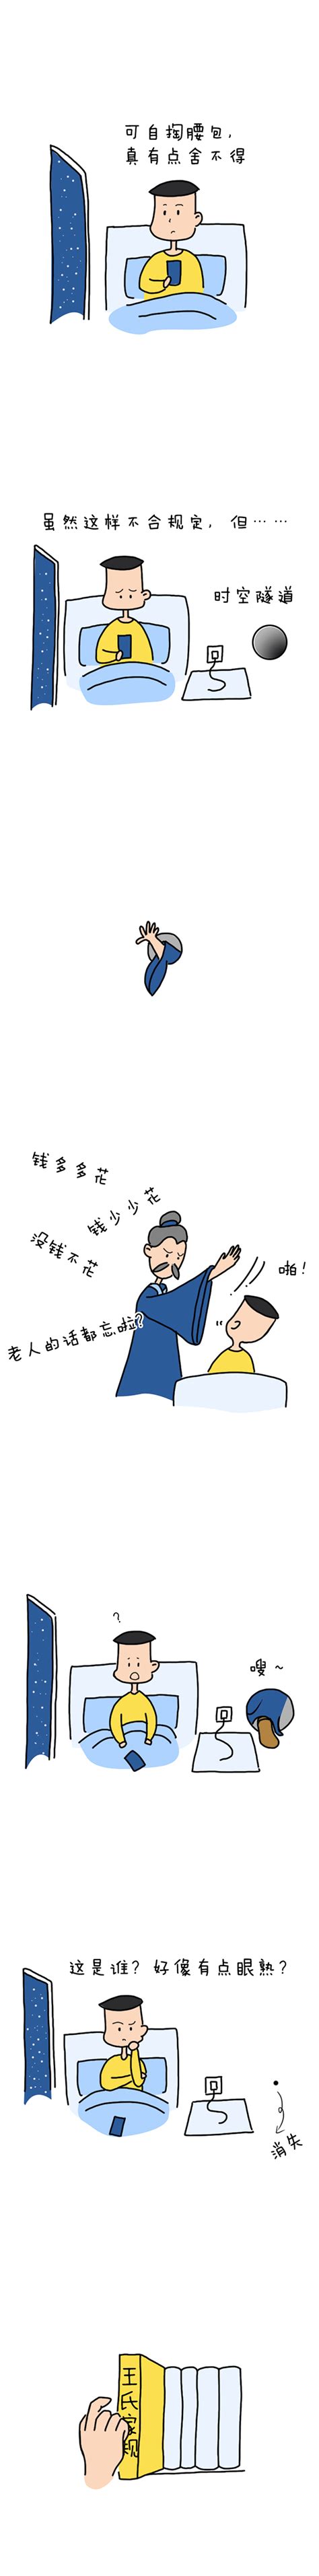 漫画说纪 | 春节将近，哪些地方不能去？————头条——中央纪委国家监委网站